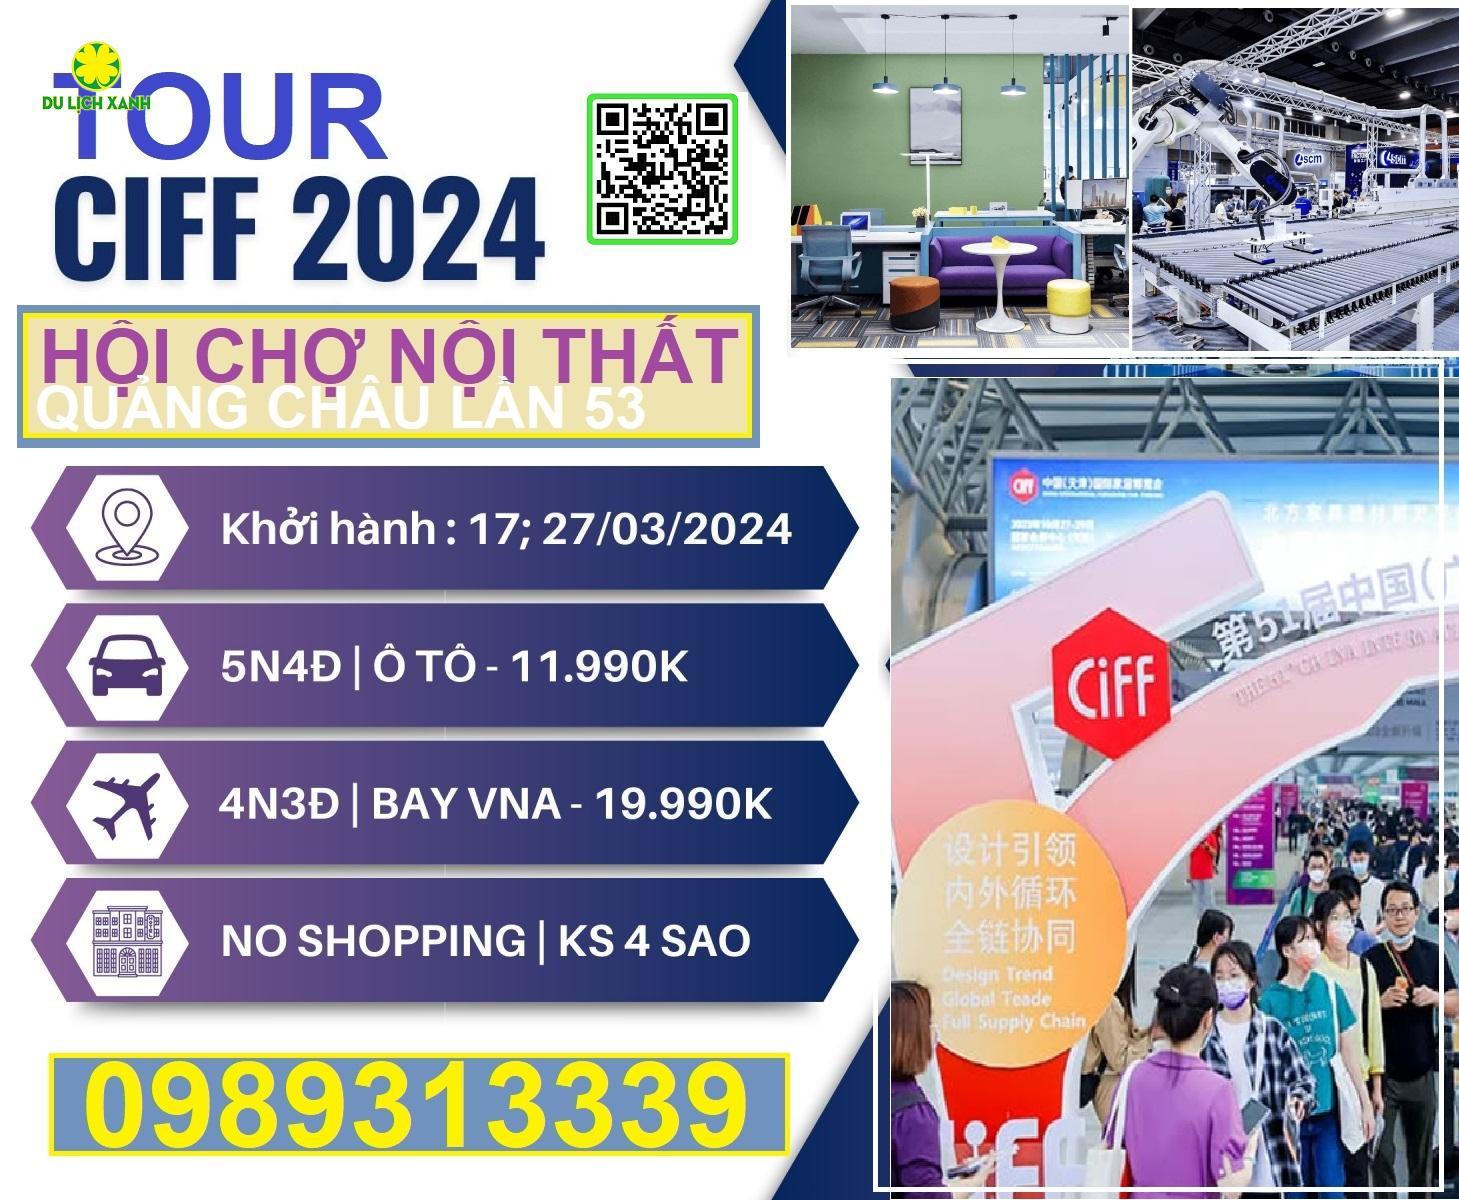 Tour Hội chợ Nội thất Trung Quốc 2024 đường bộ - CIFF 2024